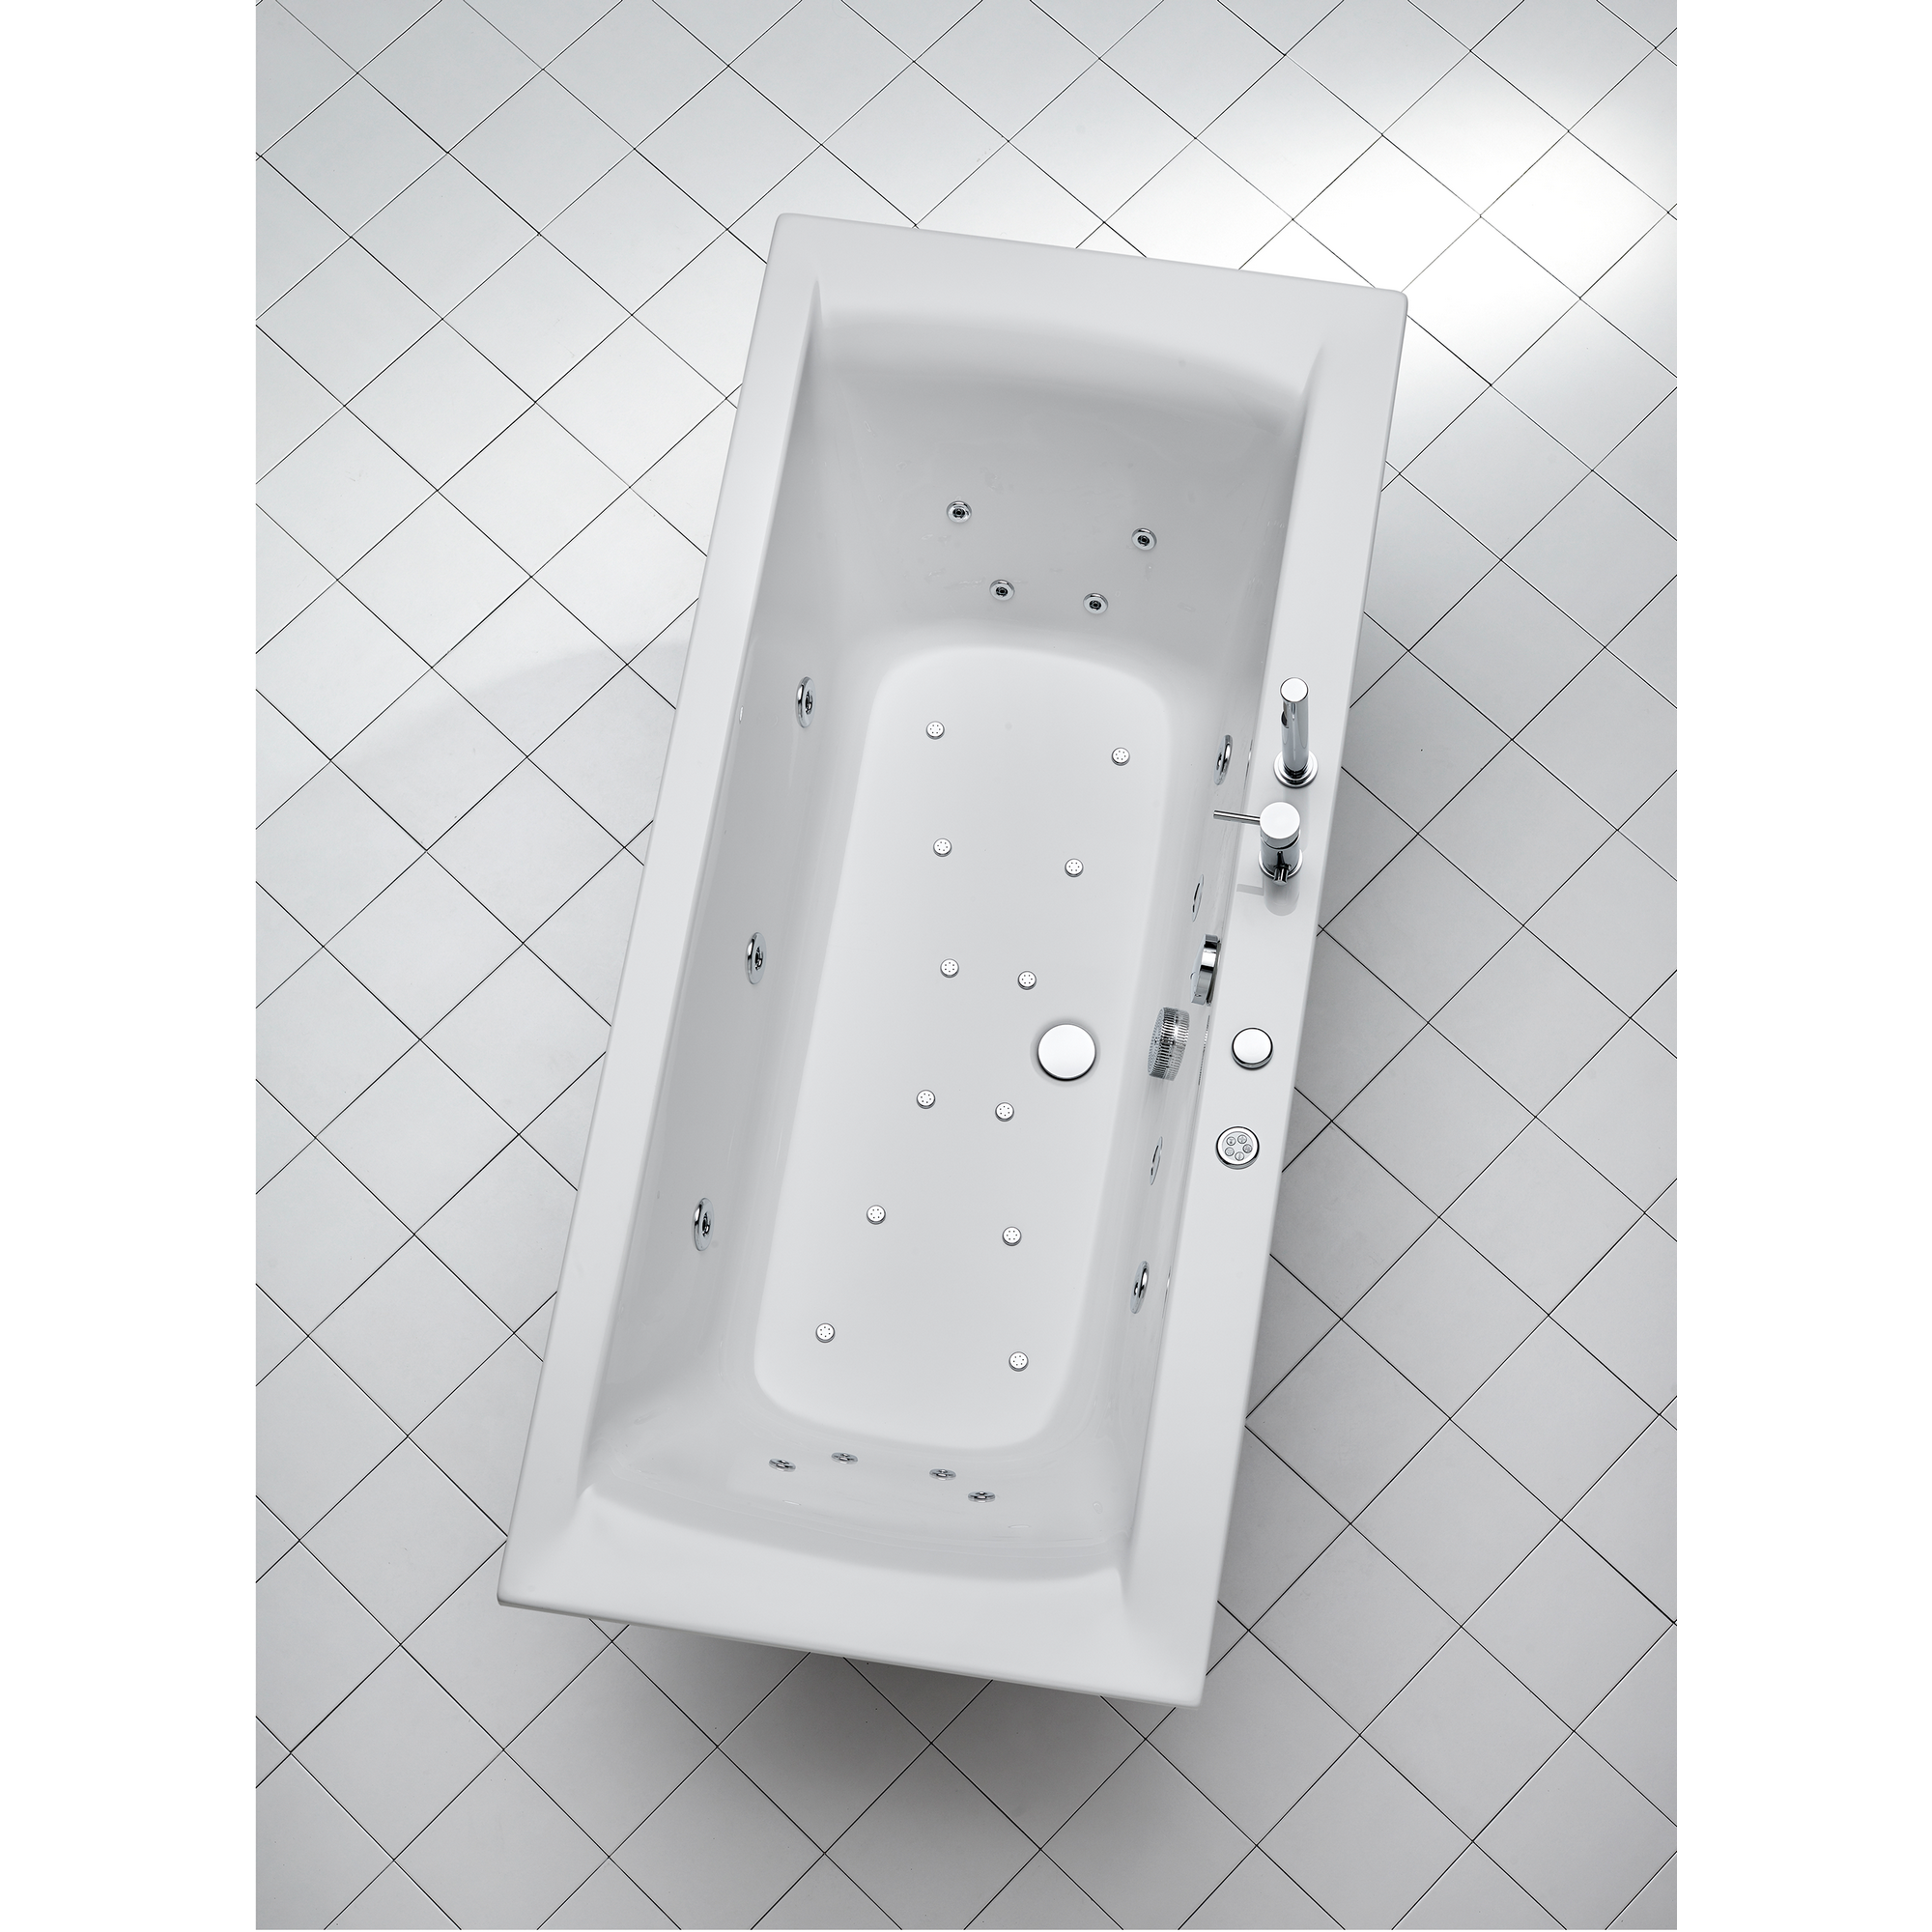 Whirlpool-Komplettset 'Rosa' Sanitäracryl weiß 170 x 75 x 45 cm + product picture